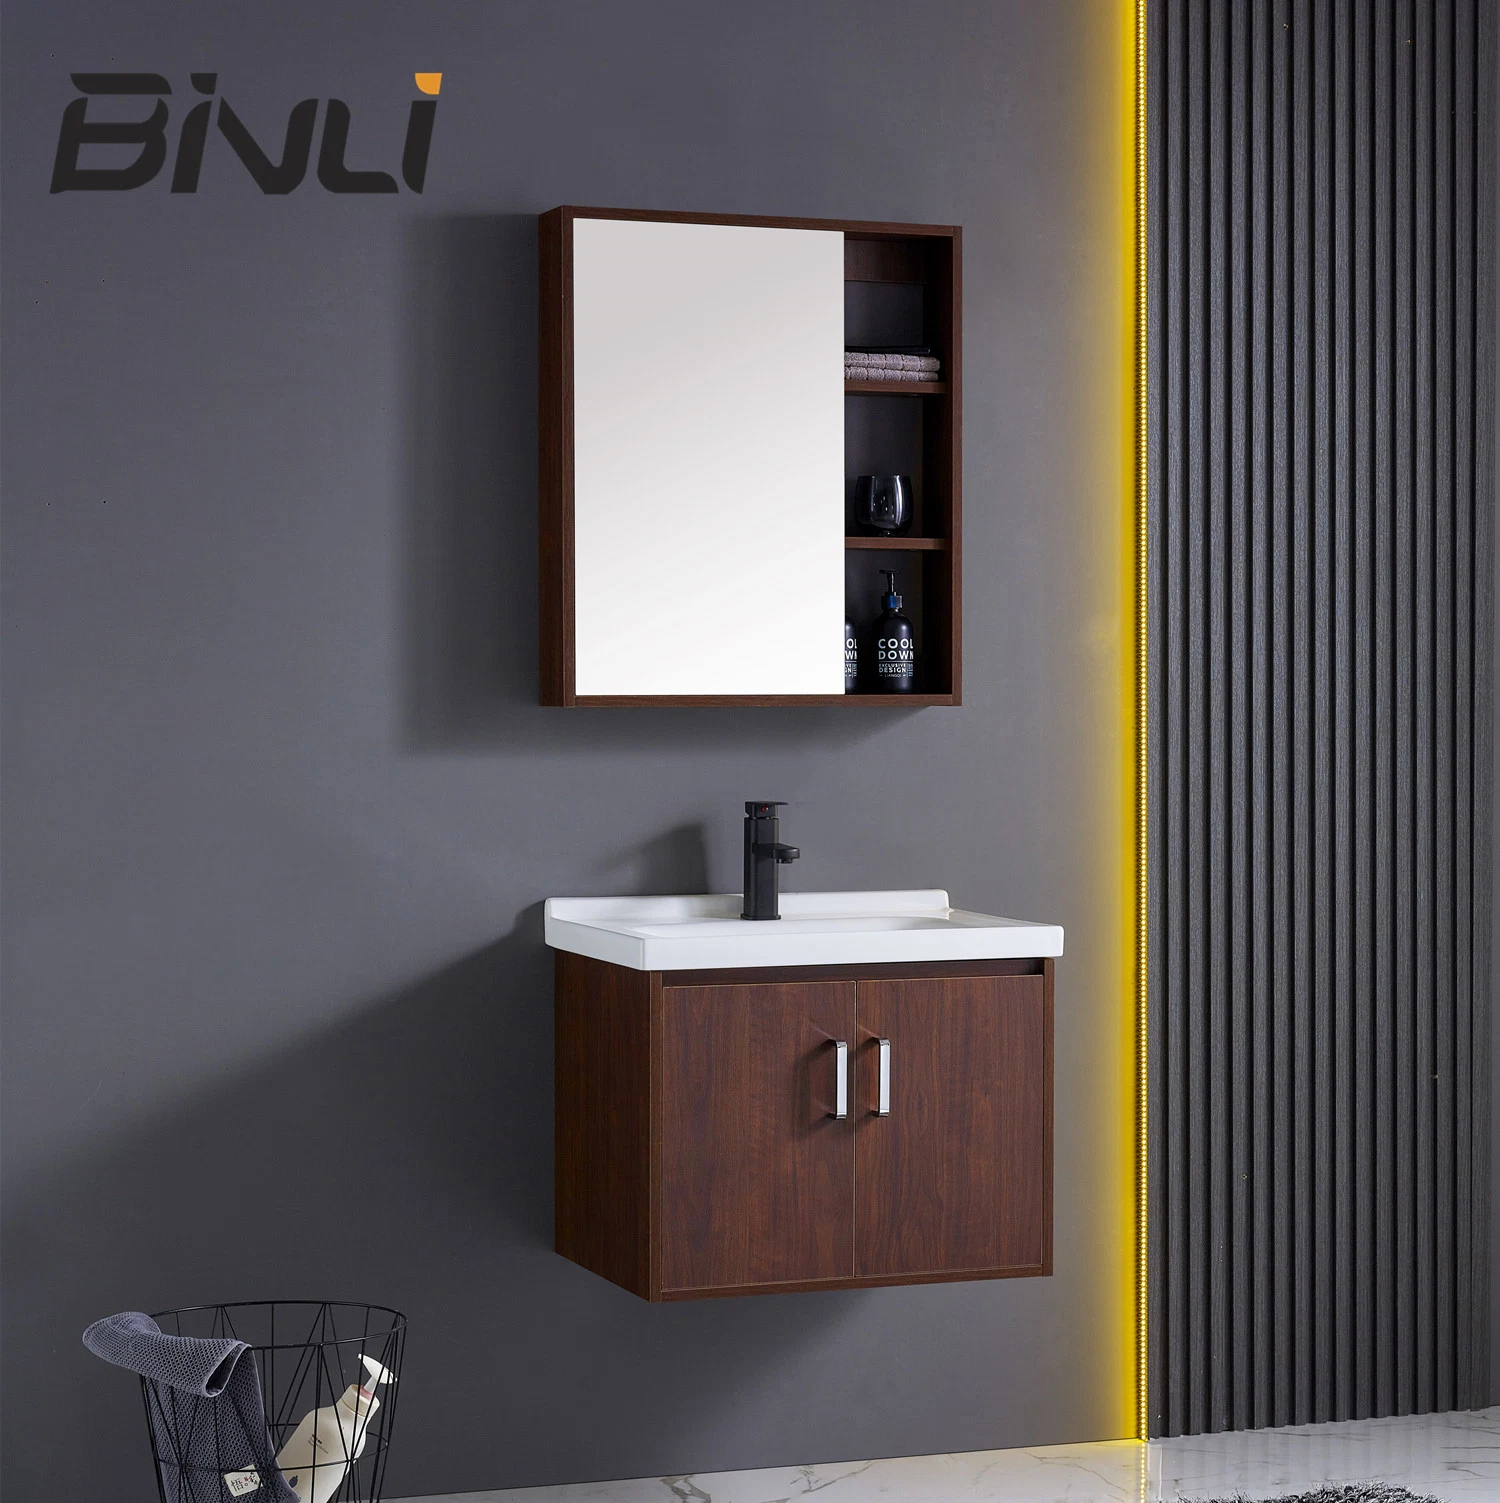 Un style moderne européenne 600mm vanité panneau en bois Salle de bains armoire avec miroir de salle de bains Binli Chaozhou Fabrication